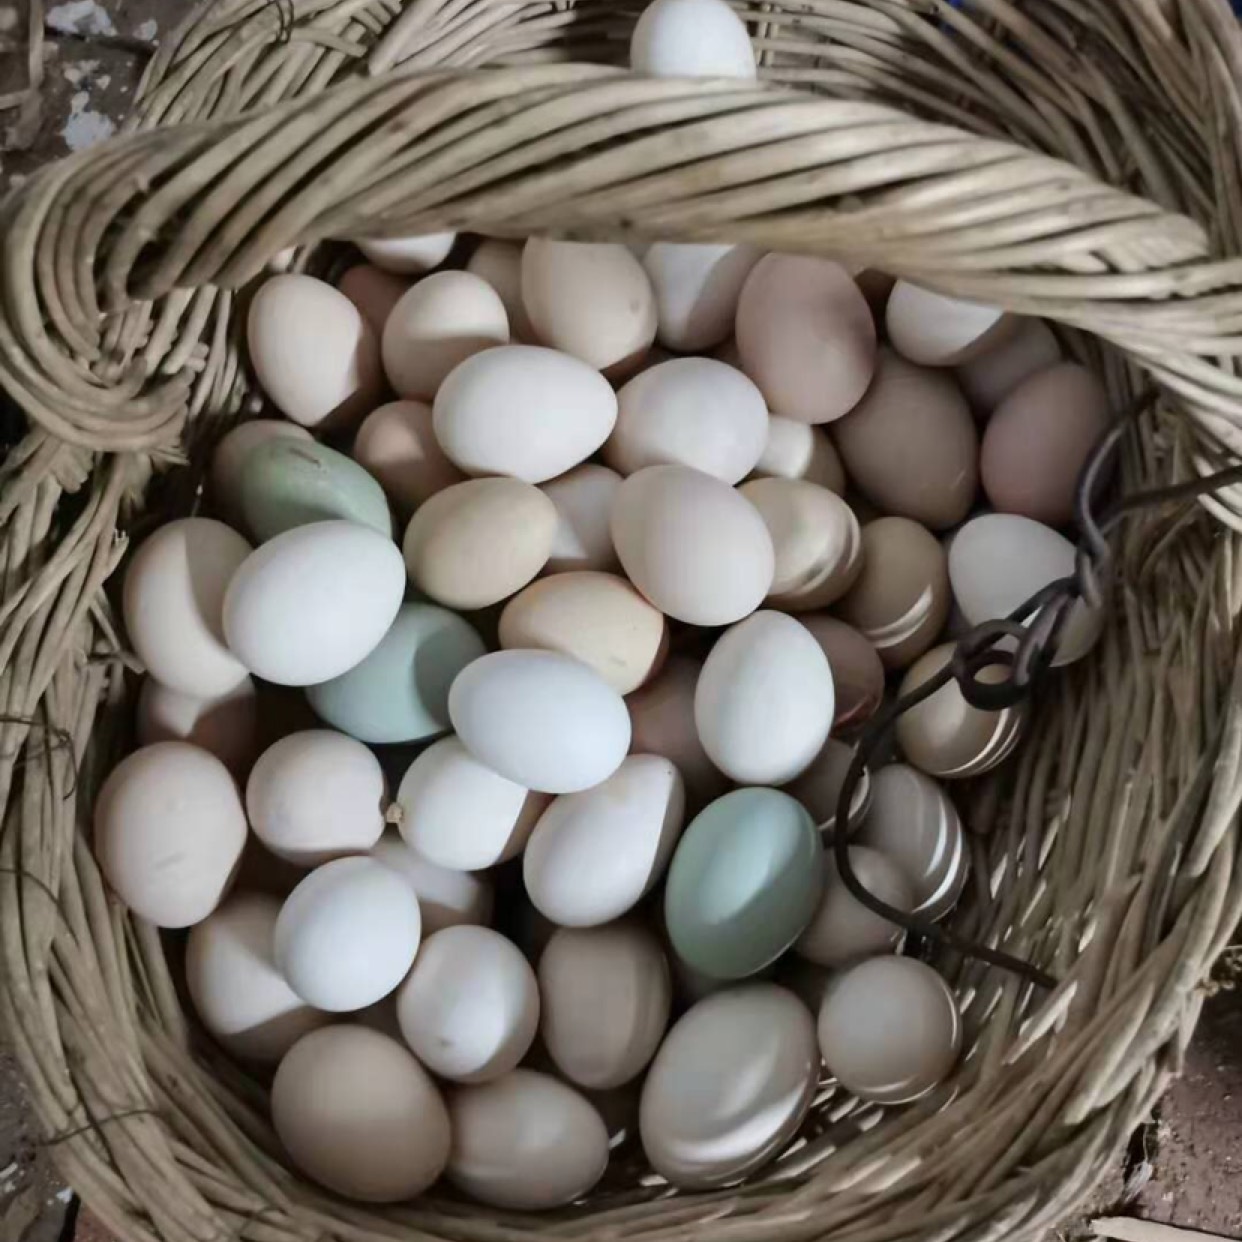 白壳蛋  土鸡蛋，纯散养土鸡，生长周期十个月以上，正规农民养殖合作社